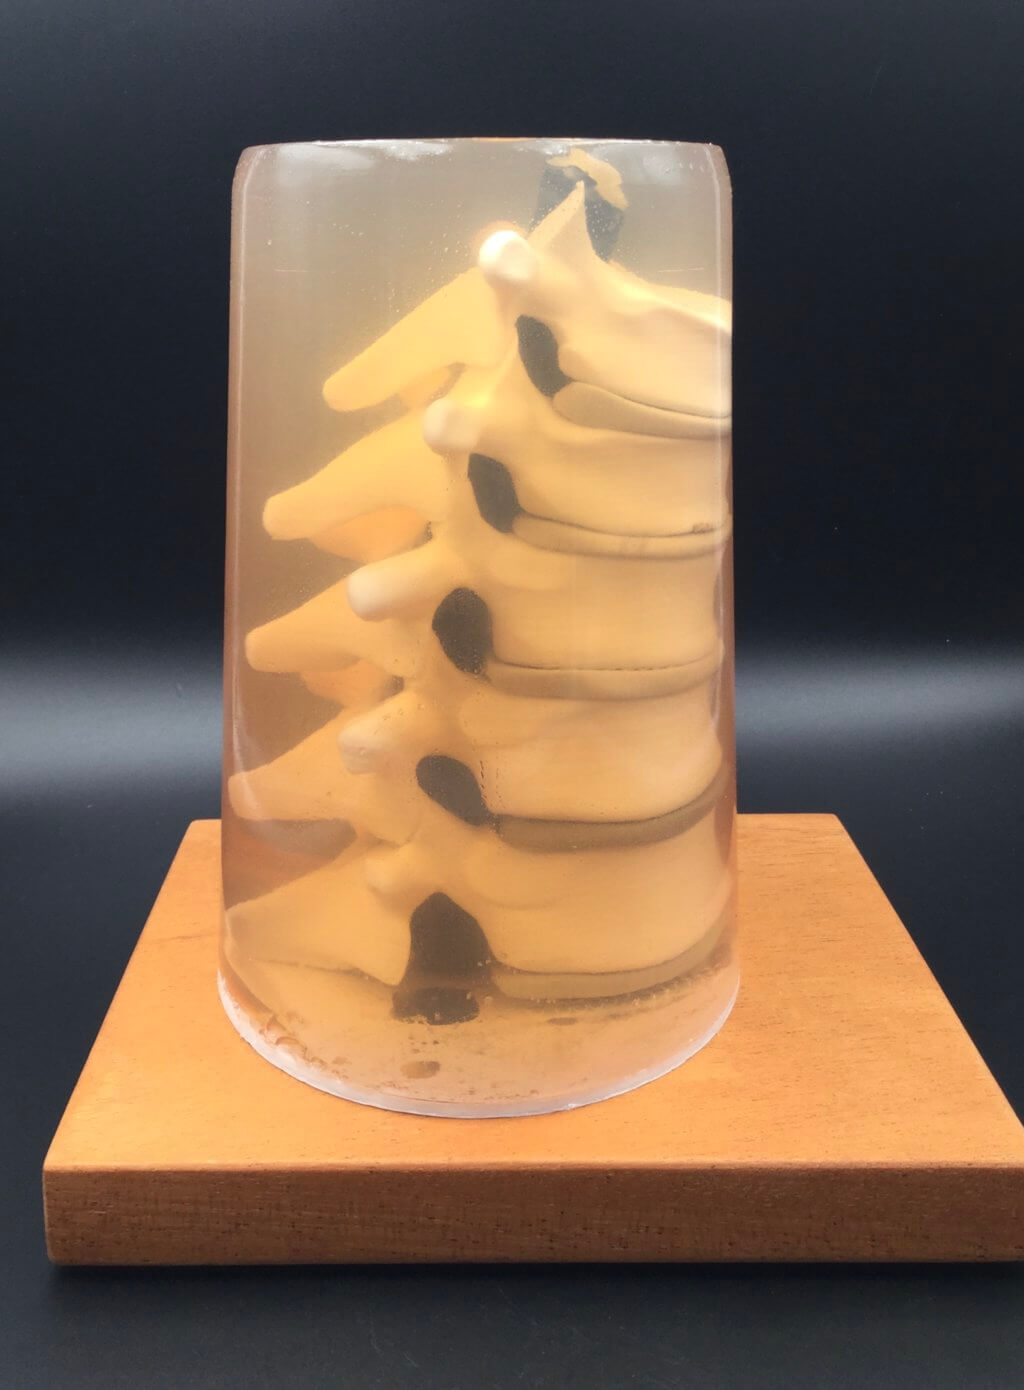 3D printed spine in gelatin enclosure